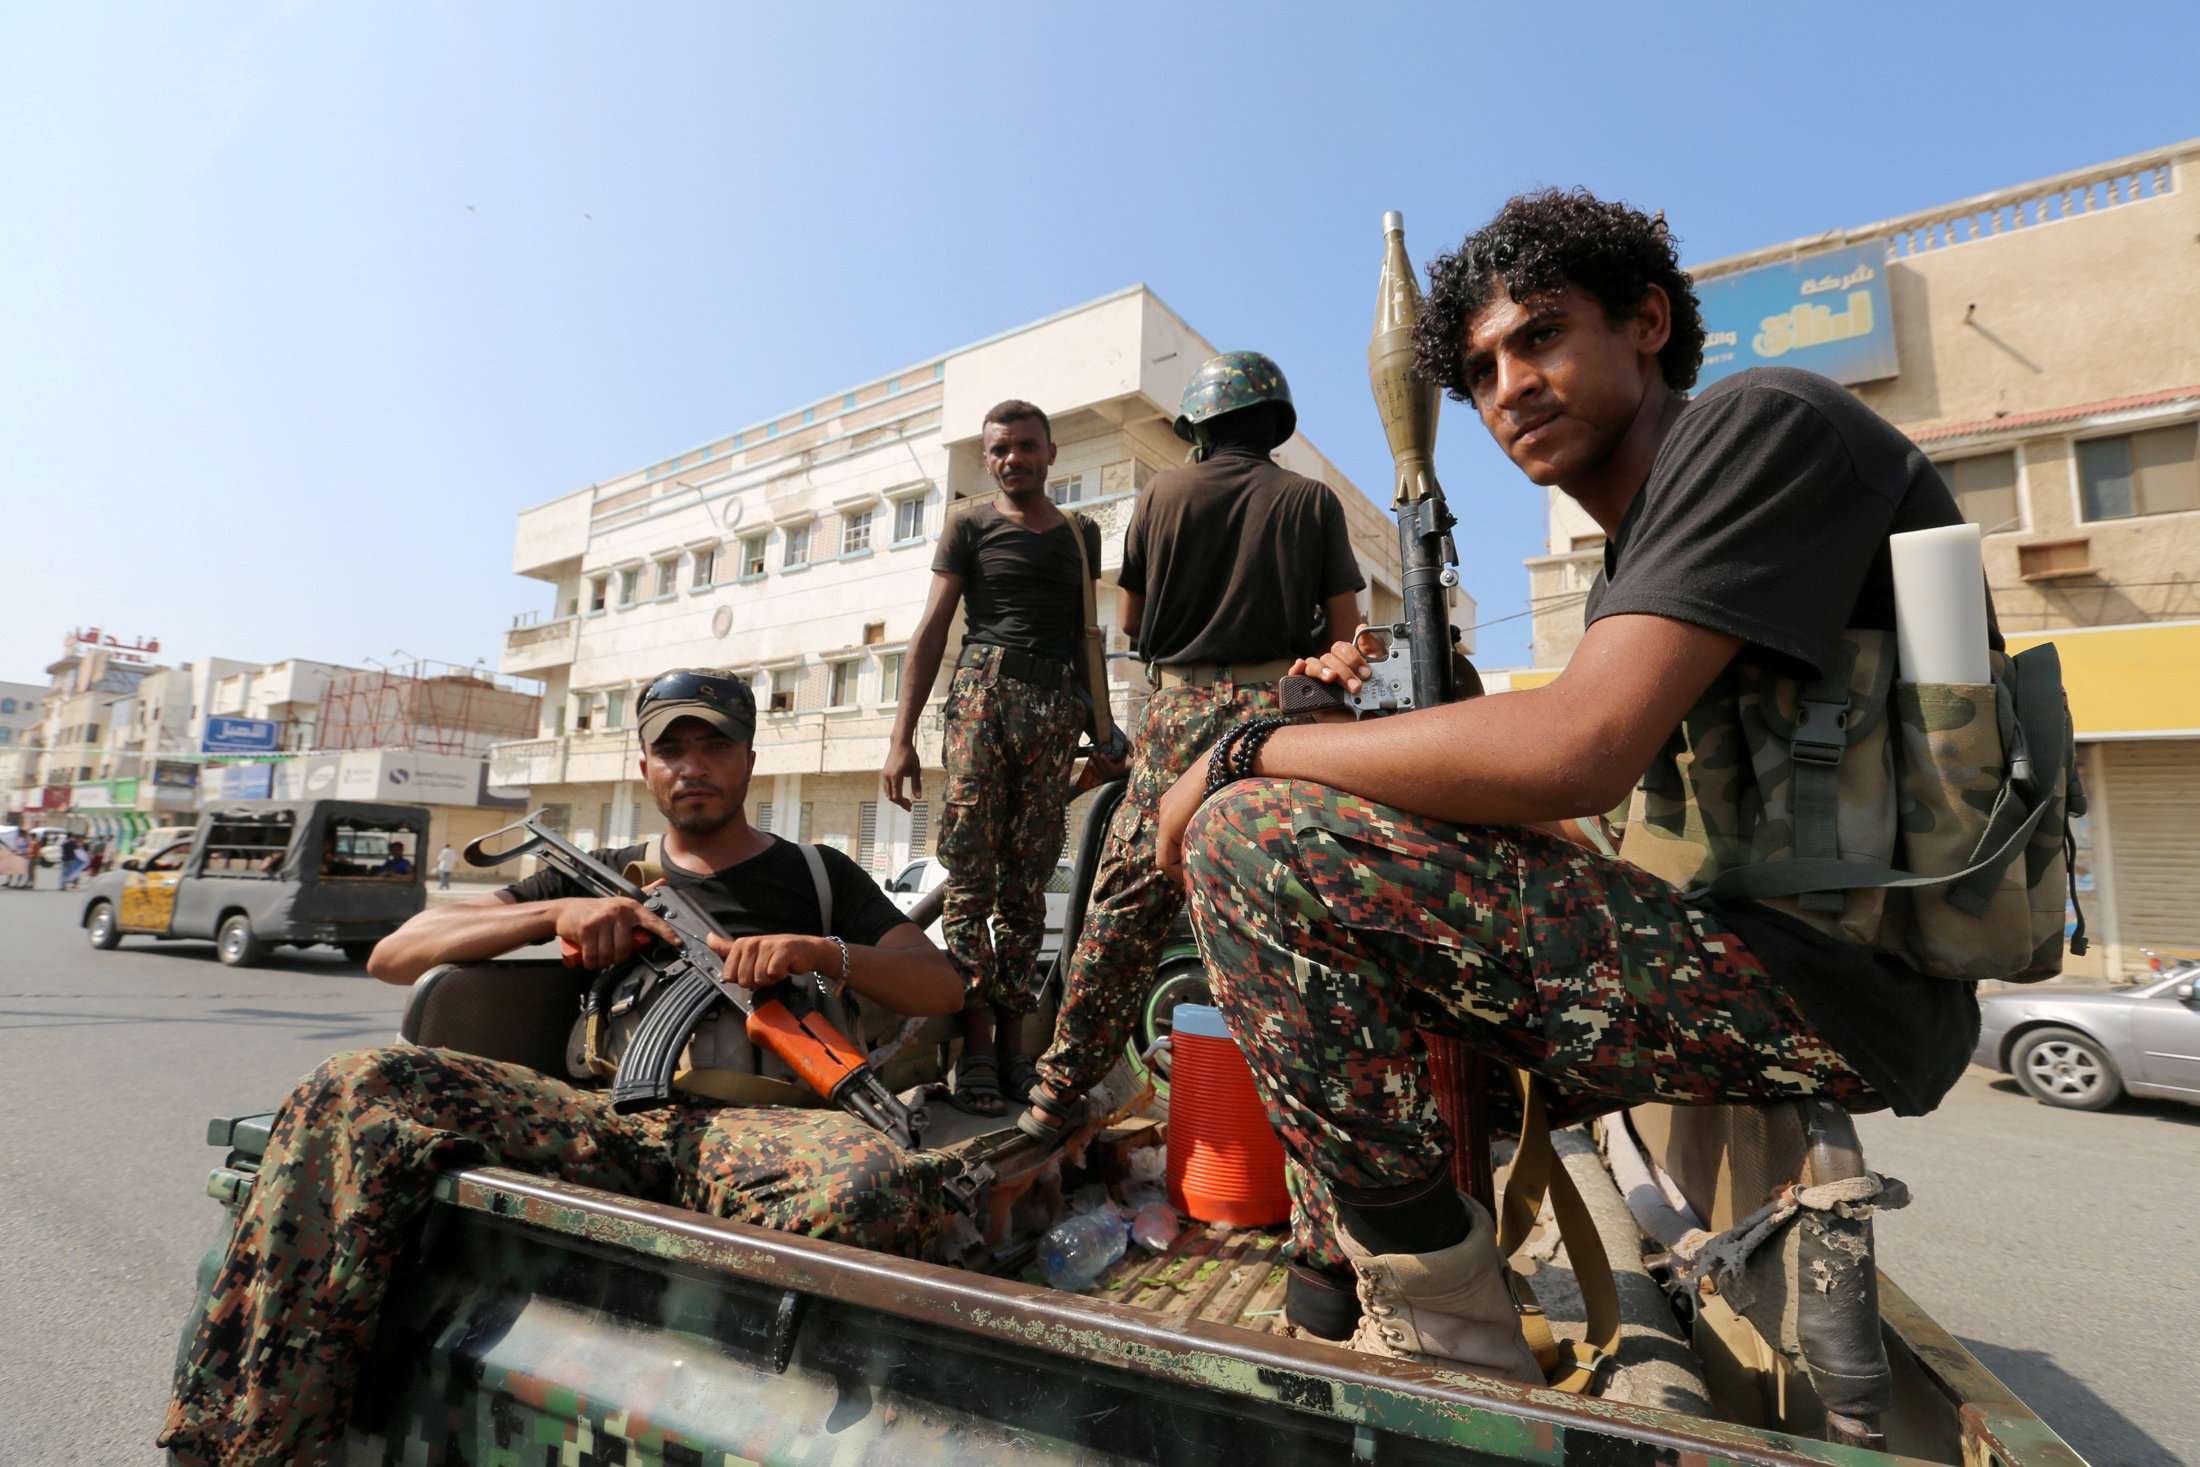 7 يناير موعد الانسحاب الكامل للحوثيين من المدينة وموانئها